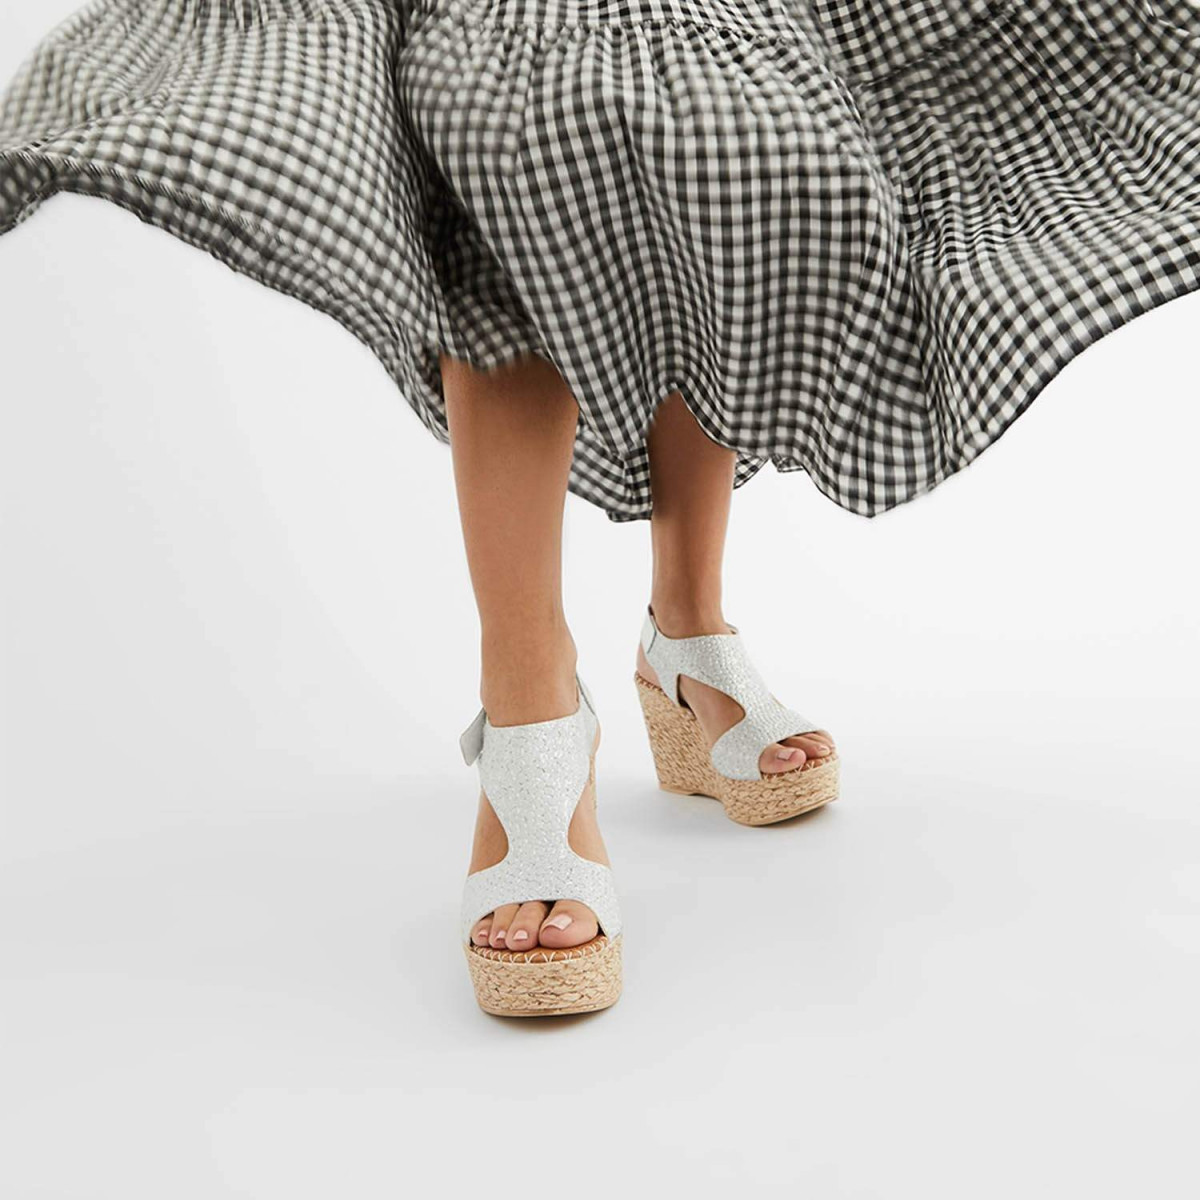 Sandales confortables compensées en cuir grainé et motifs incrustés - Blanc - Marila